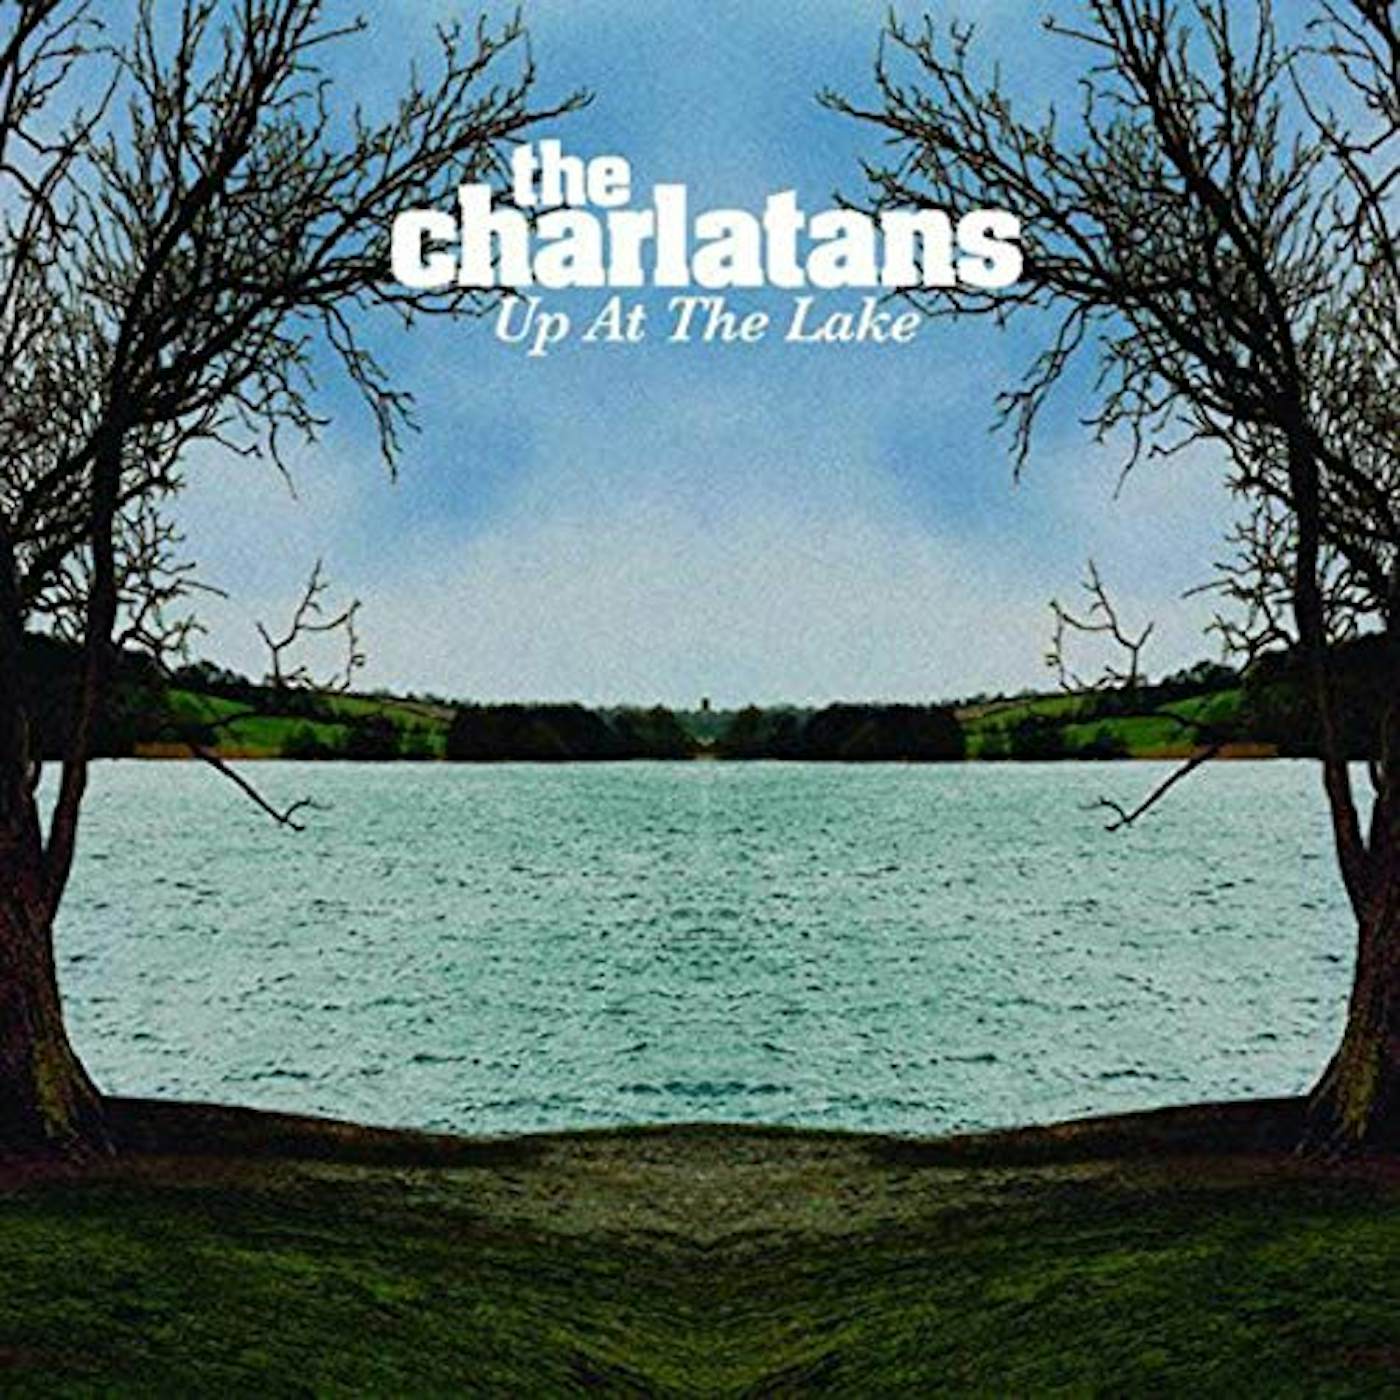 The Charlatans Up At The Lake Vinyl Record